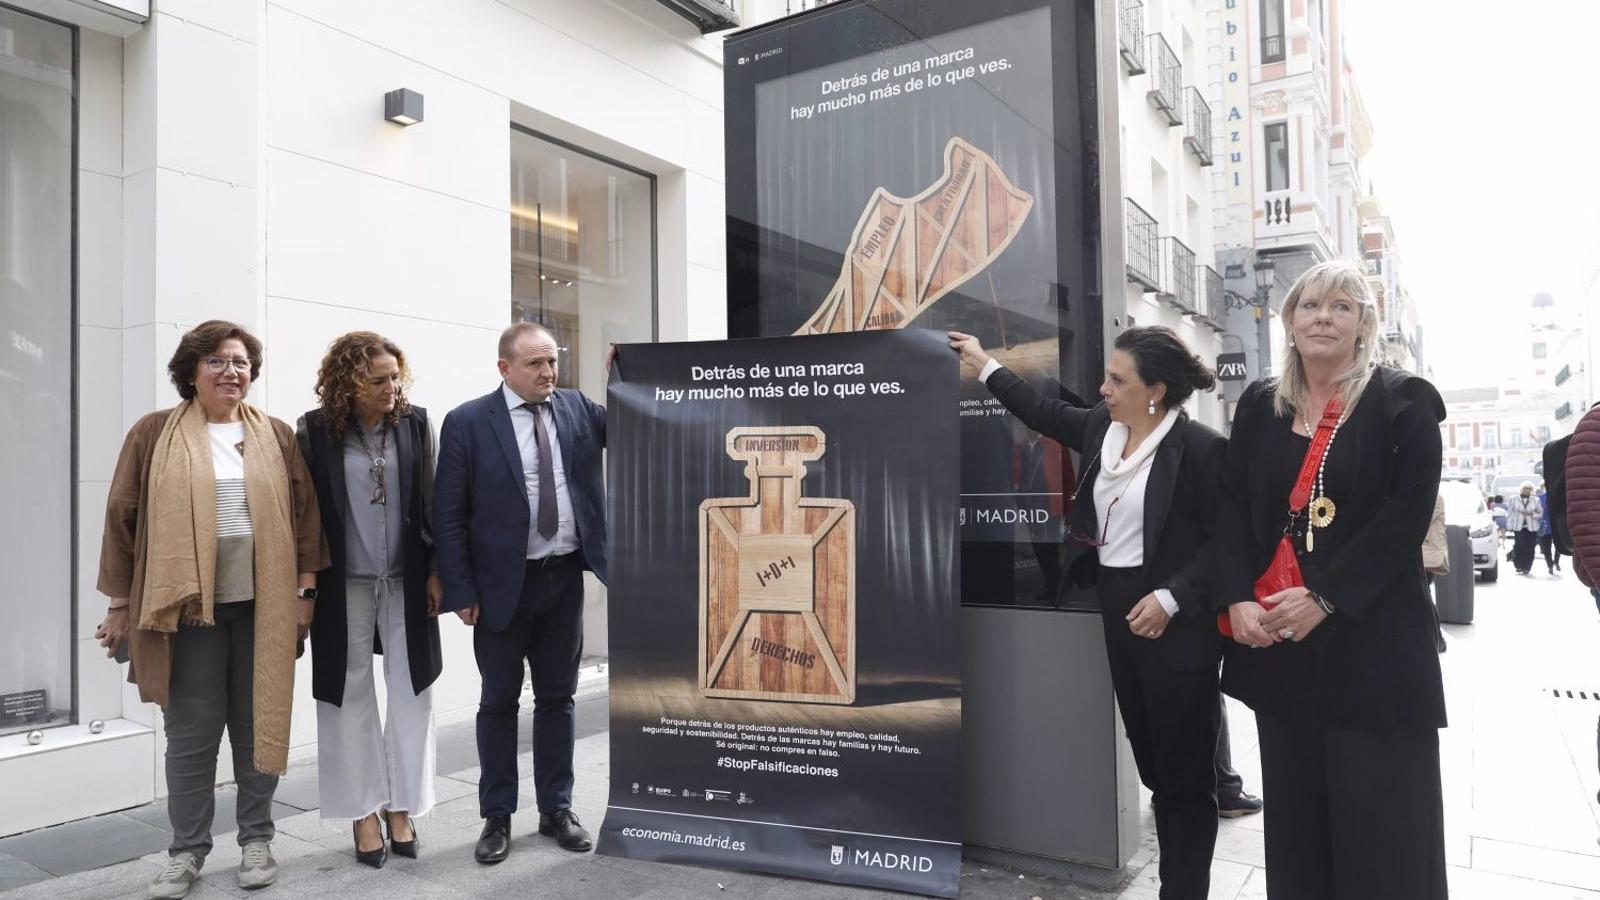 El Ayuntamiento de Madrid planta cara a las falsificaciones y la venta ilegal